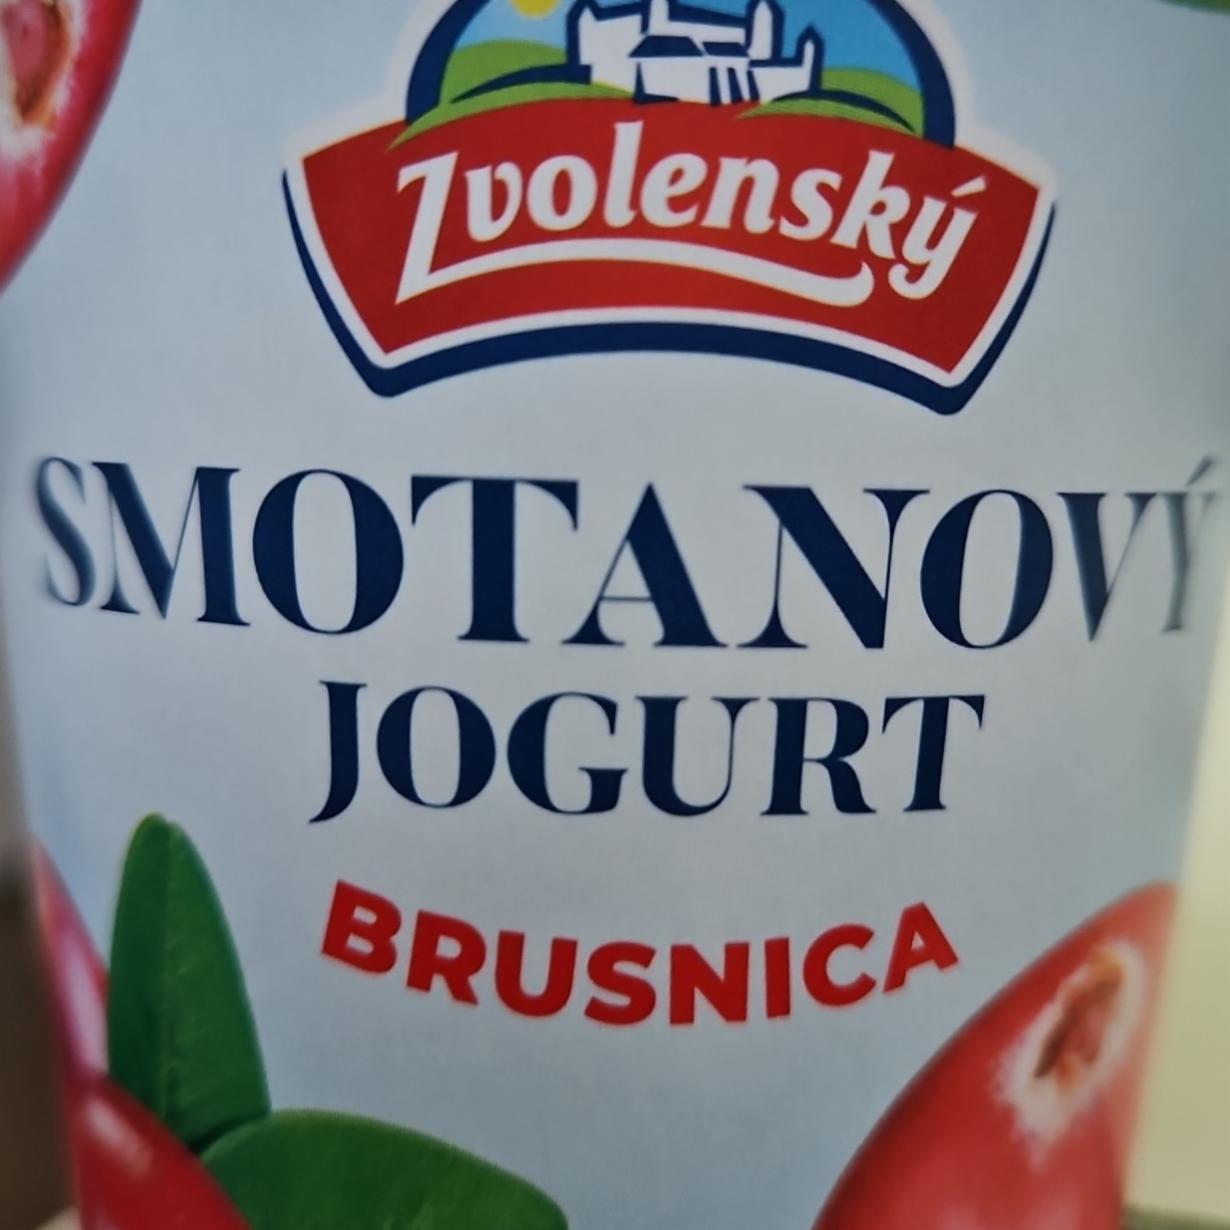 Fotografie - Smotanový jogurt Brusnica Zvolenský